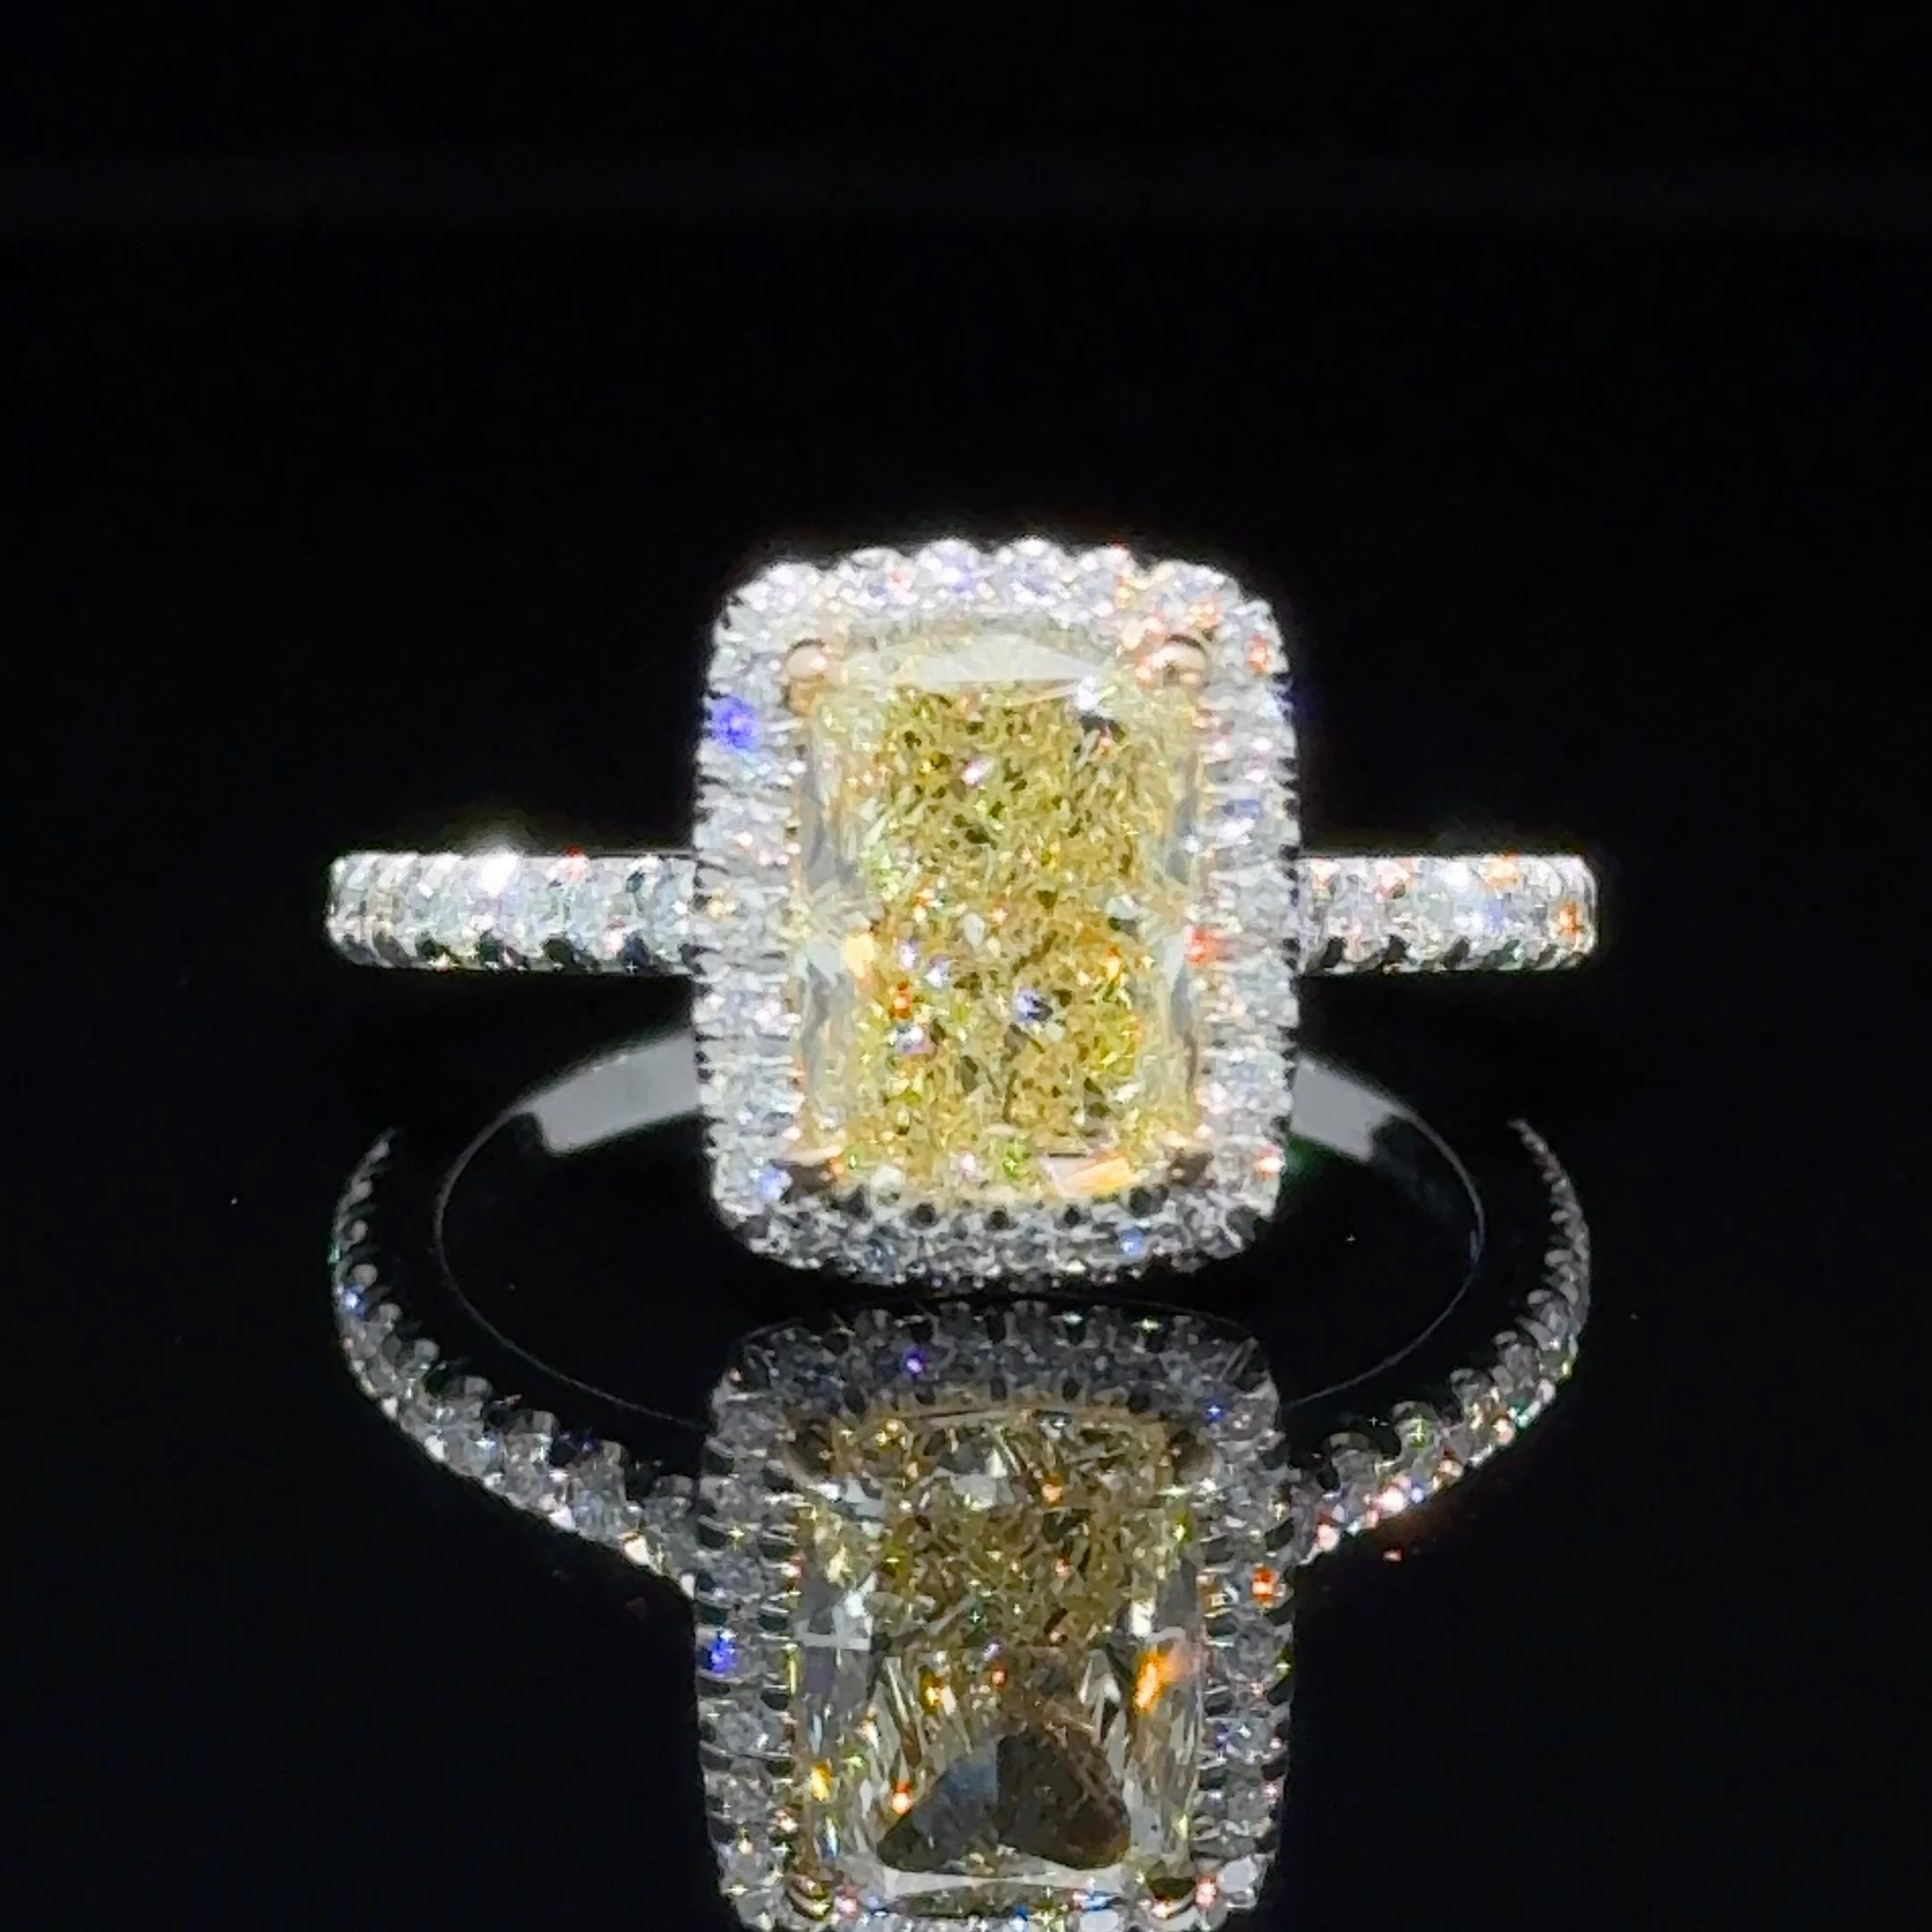 Unter den gelben Diamanten sind die länglichen Formen die begehrtesten Konturen für Kissen- und Strahlenschliffe.
Sie sehen größer aus, als ihr Gewicht vermuten lässt, und sie sehen aus wie Edelsteine. 
Ein einfach atemberaubender länglicher